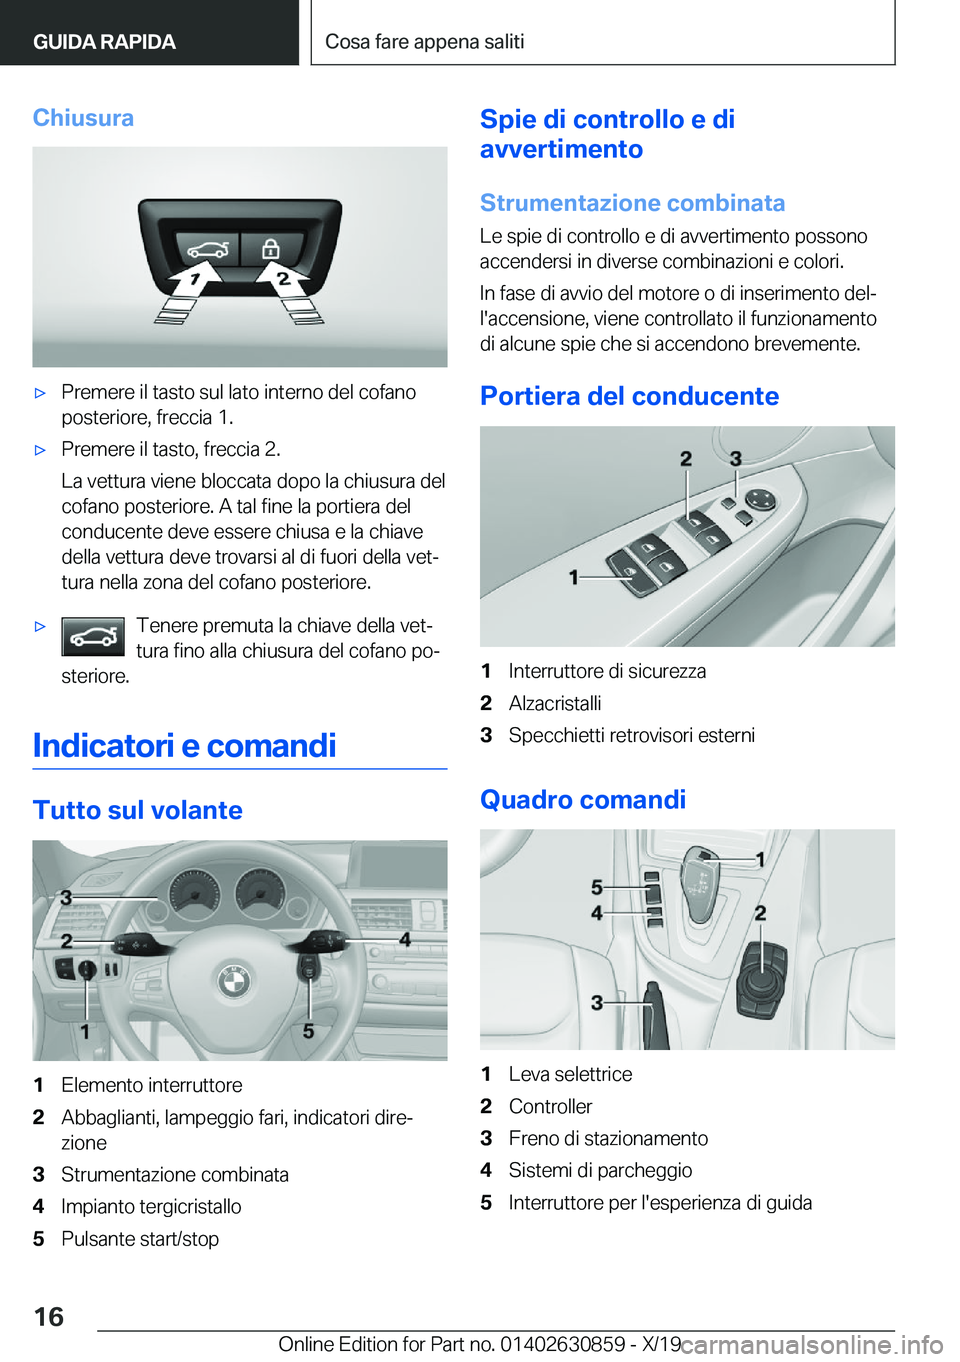 BMW 4 SERIES GRAN COUPE 2020  Libretti Di Uso E manutenzione (in Italian) �C�h�i�u�s�u�r�a'x�P�r�e�m�e�r�e��i�l��t�a�s�t�o��s�u�l��l�a�t�o��i�n�t�e�r�n�o��d�e�l��c�o�f�a�n�o�p�o�s�t�e�r�i�o�r�e�,��f�r�e�c�c�i�a��1�.'x�P�r�e�m�e�r�e��i�l��t�a�s�t�o�,��f�r